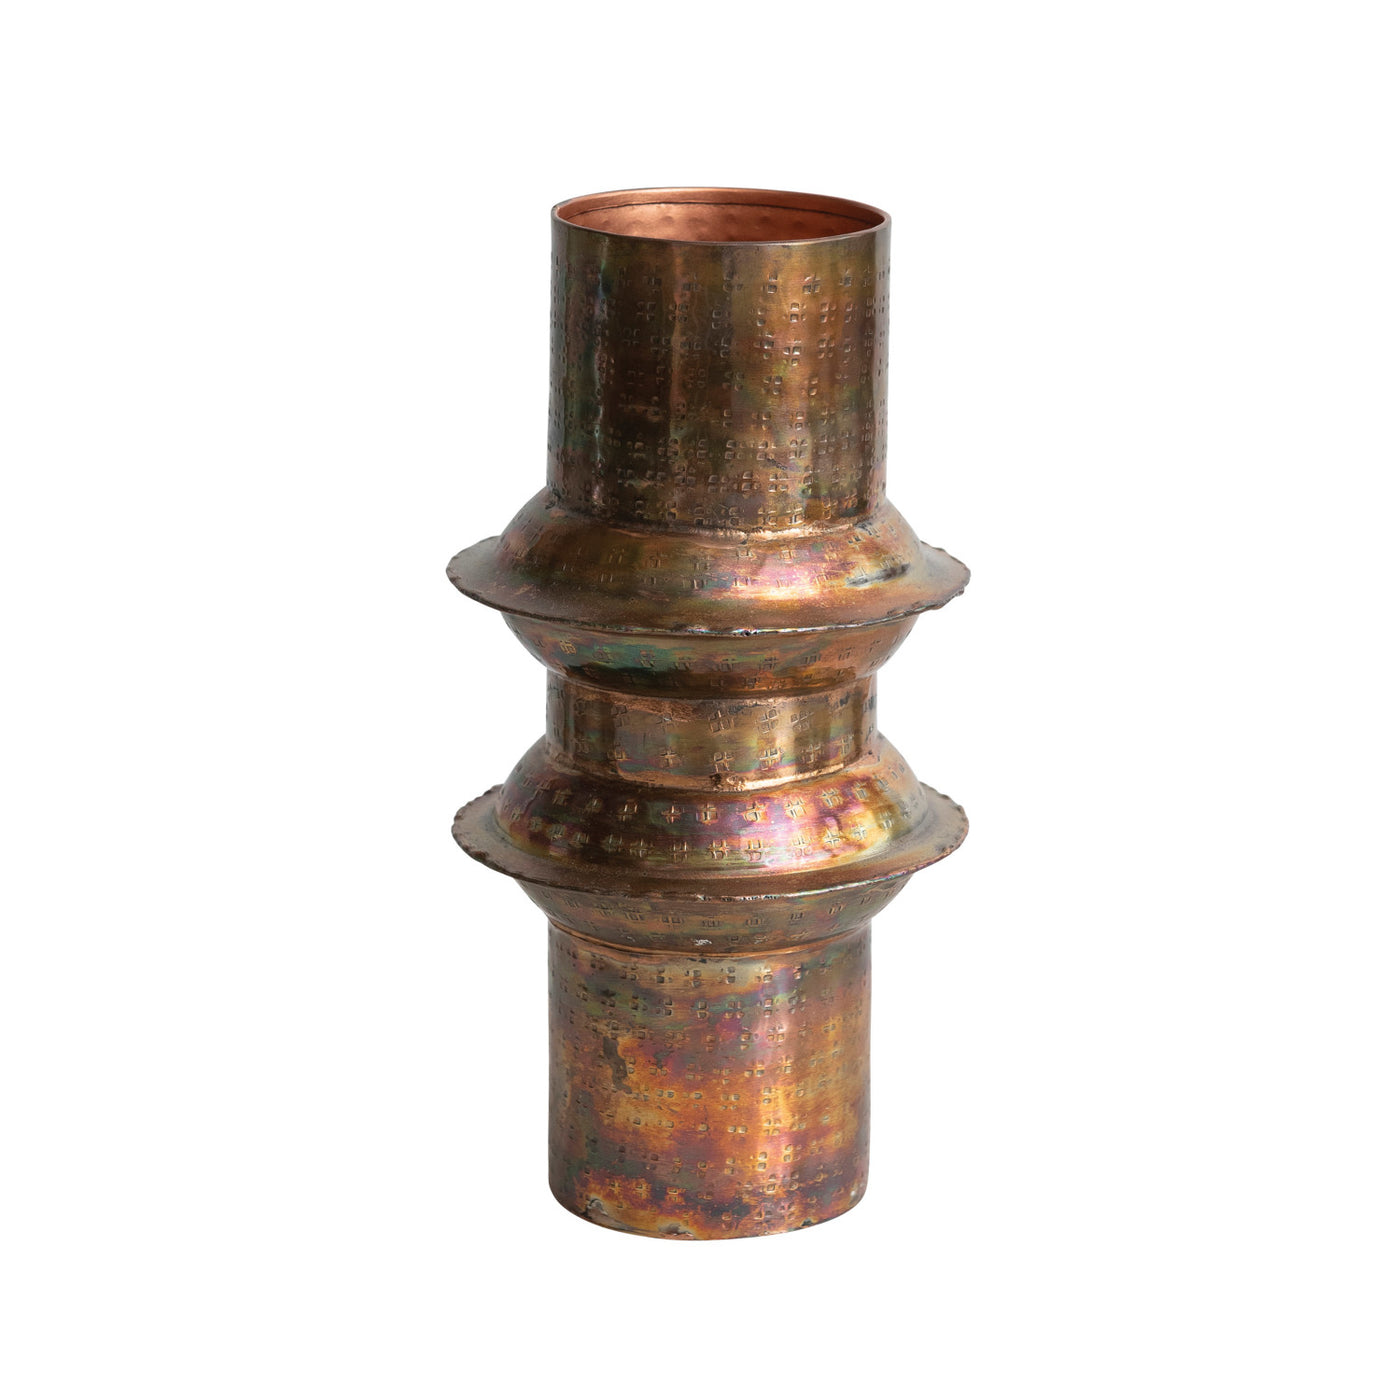 Antique Copper Hammered Metal Vase